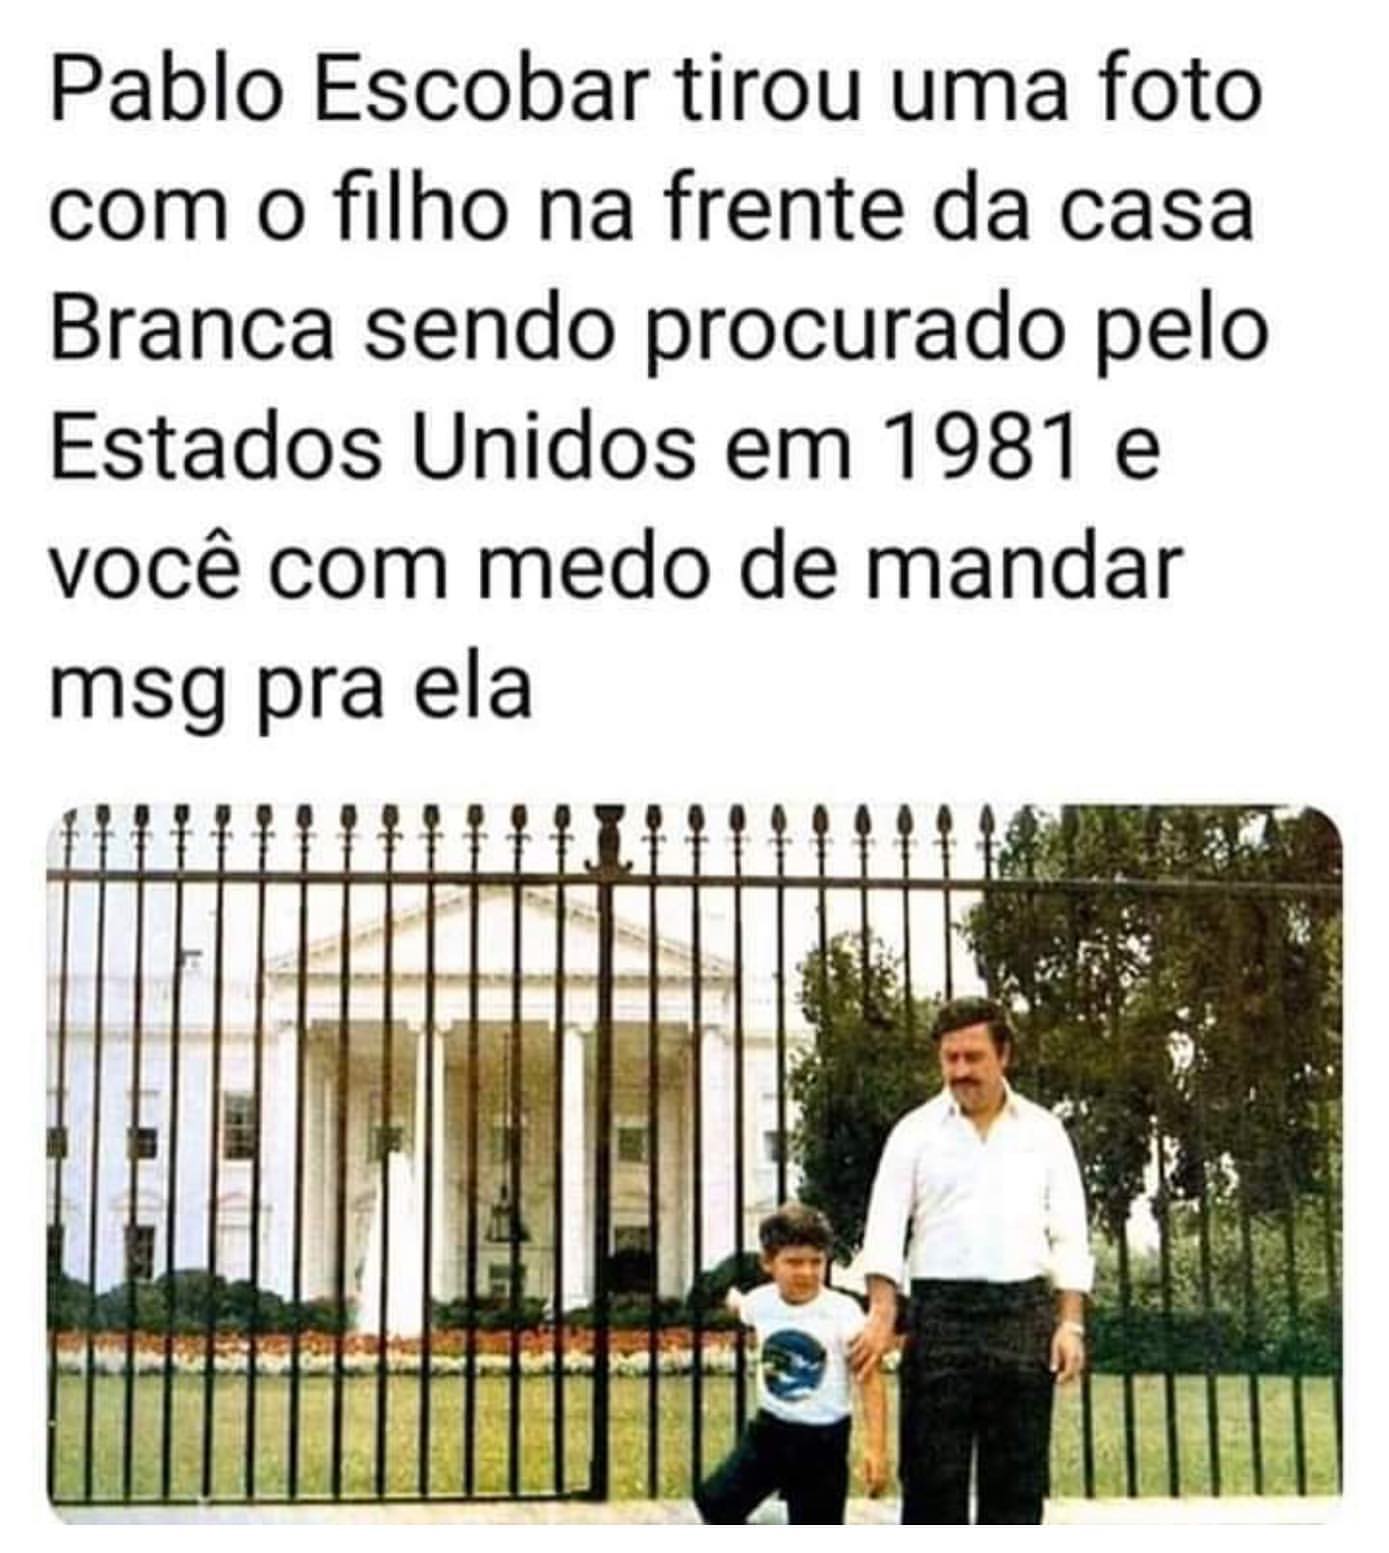 Pablo Escobar tirou uma foto com o filho na frente da casa Branca sendo procurado pelo Estados Unidos em 1981 e você com medo de mandar msg pra ela.